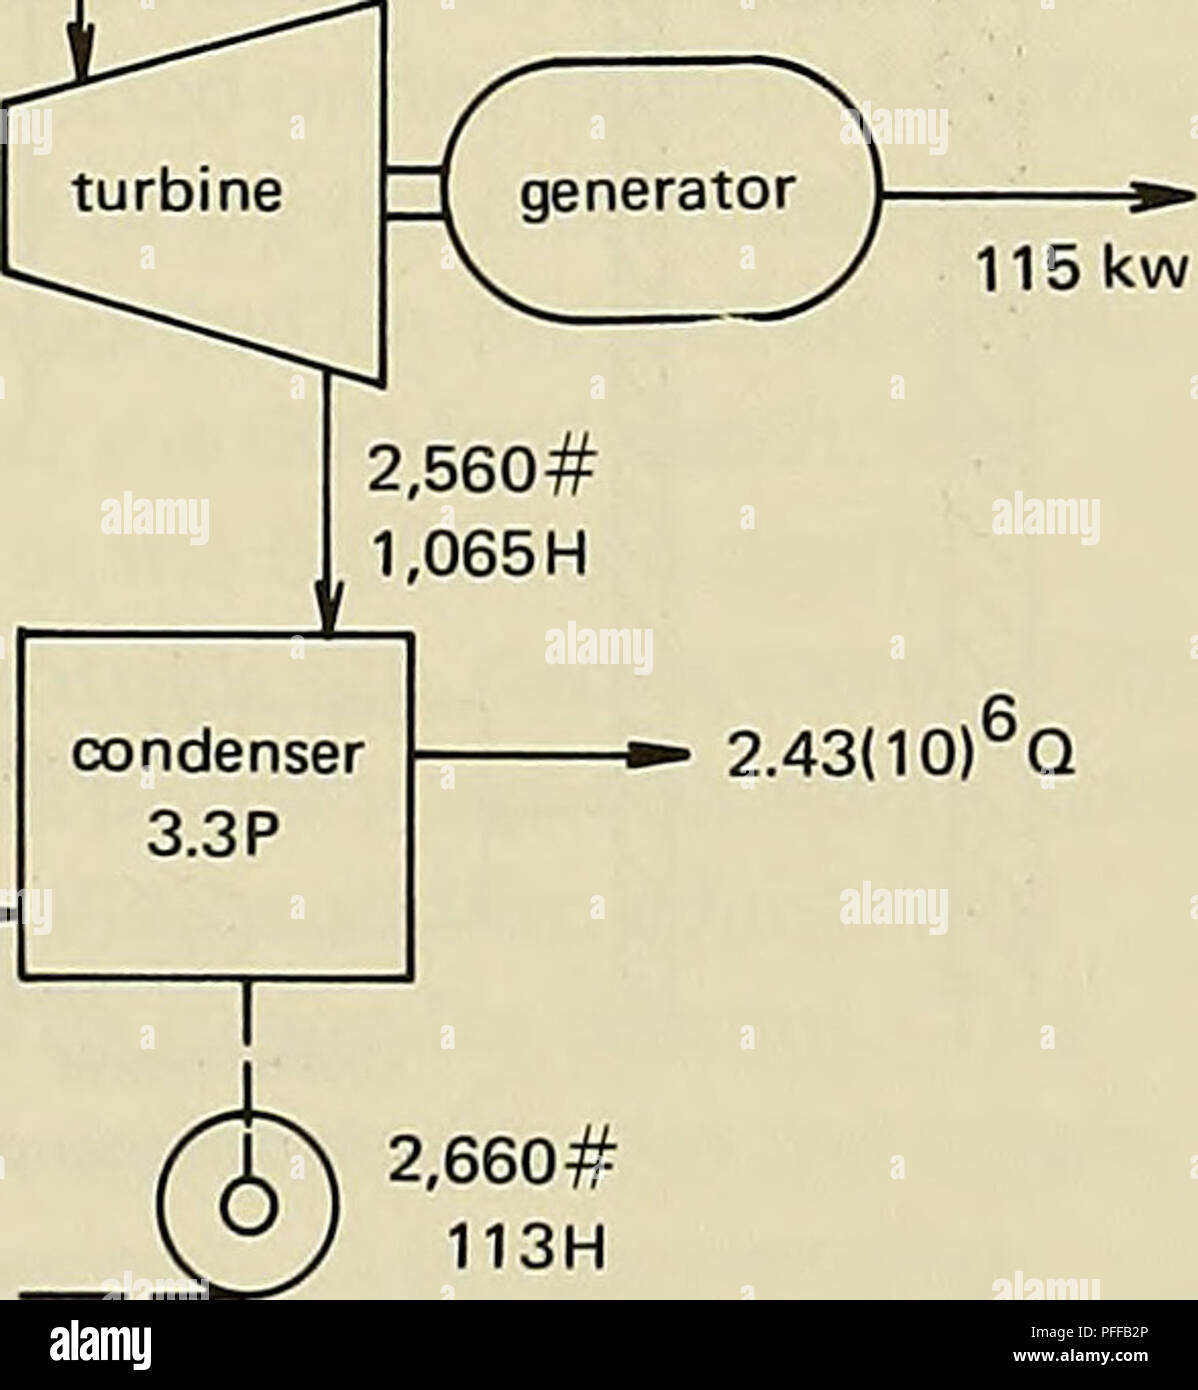 . Deep Ocean Power Systems. Verteilung der elektrischen Leistung; Wasserkraftwerke. Abbildung A-5. Vorläufige Kraftwerk conversion System. Legende; 2.660 Nr. 262 P 1.235 H 100#Dampferzeuger Hilfs steam System (, Drüse, Auspuffanlage, etc.] Wasser # = Durchfluss, Ib/hr P = Druck, Psia 2.560 #Q^|^^ gg_B "^^j/h H = Enthalpie, Btu/lb ICH 2.660 #113 H (^- 100# Make-up. 2.43 (10) "Q" JLA 2.660#^113 H kondensatpumpe ich pumpe Abbildung A-6. Die vorläufigen Leistung heat Balance. 101. Bitte beachten Sie, dass diese Bilder aus gescannten Seite Bilder, die digital verbessert worden sein können extrahiert werden Stockfoto